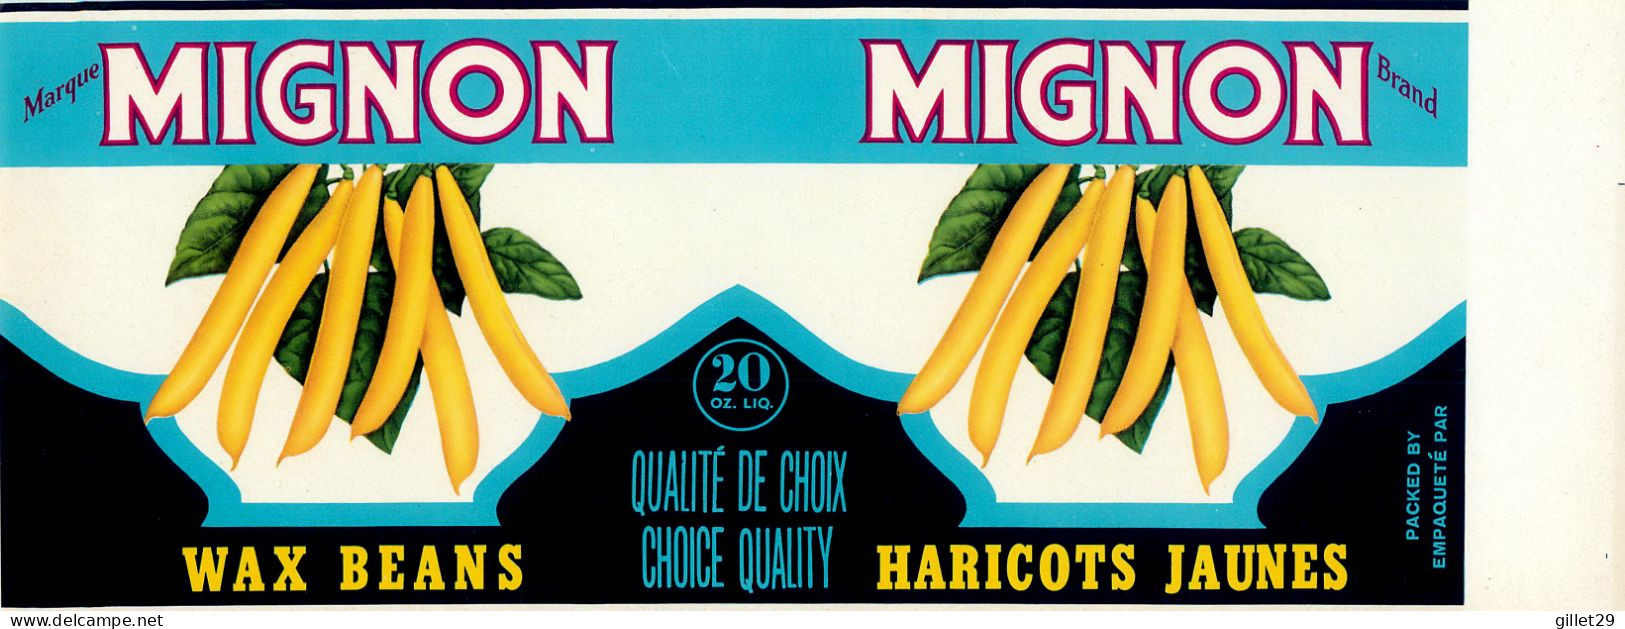 ÉTIQUETTES - MARQUE MIGNON BRAND - HARICOTS JAUNE - WAX BEANS - 20 OZS CANADA - DIMENSION 10.5 X 28 Cm - - Fruits Et Légumes